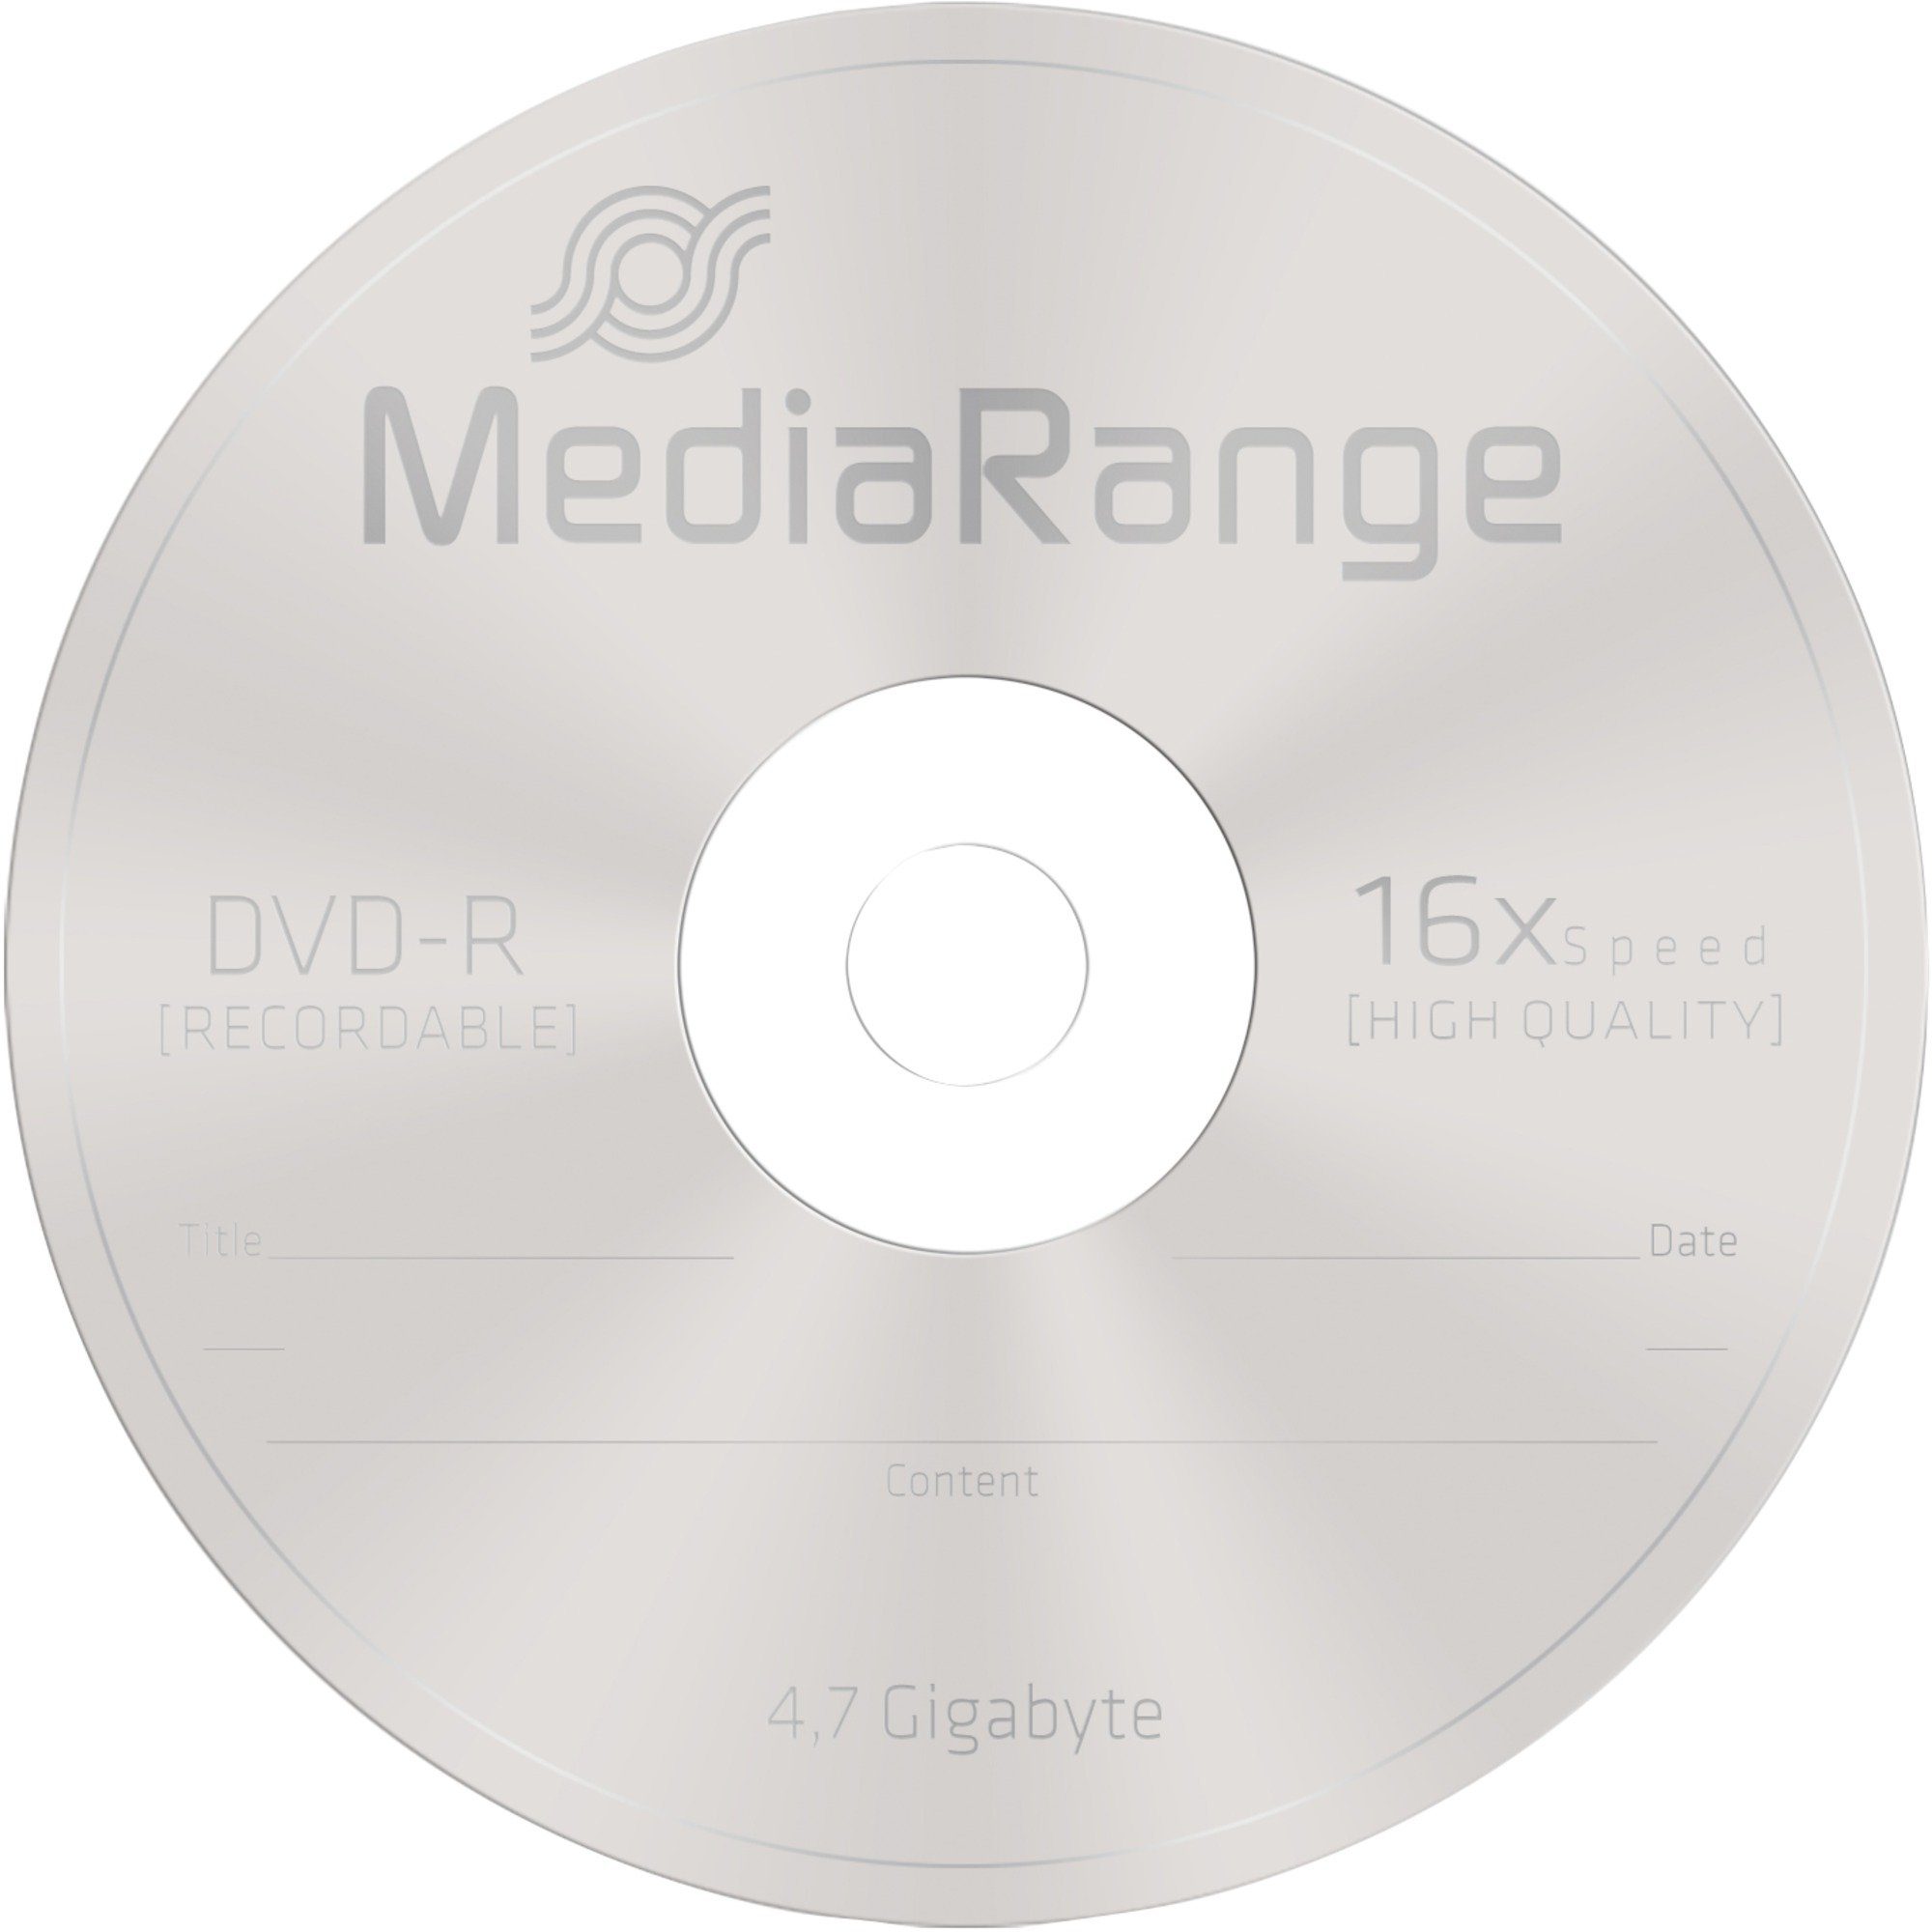 GB, Mediarange DVD-Rohling DVD-R (16fach DVD-Rohlinge, MediaRange 4,7